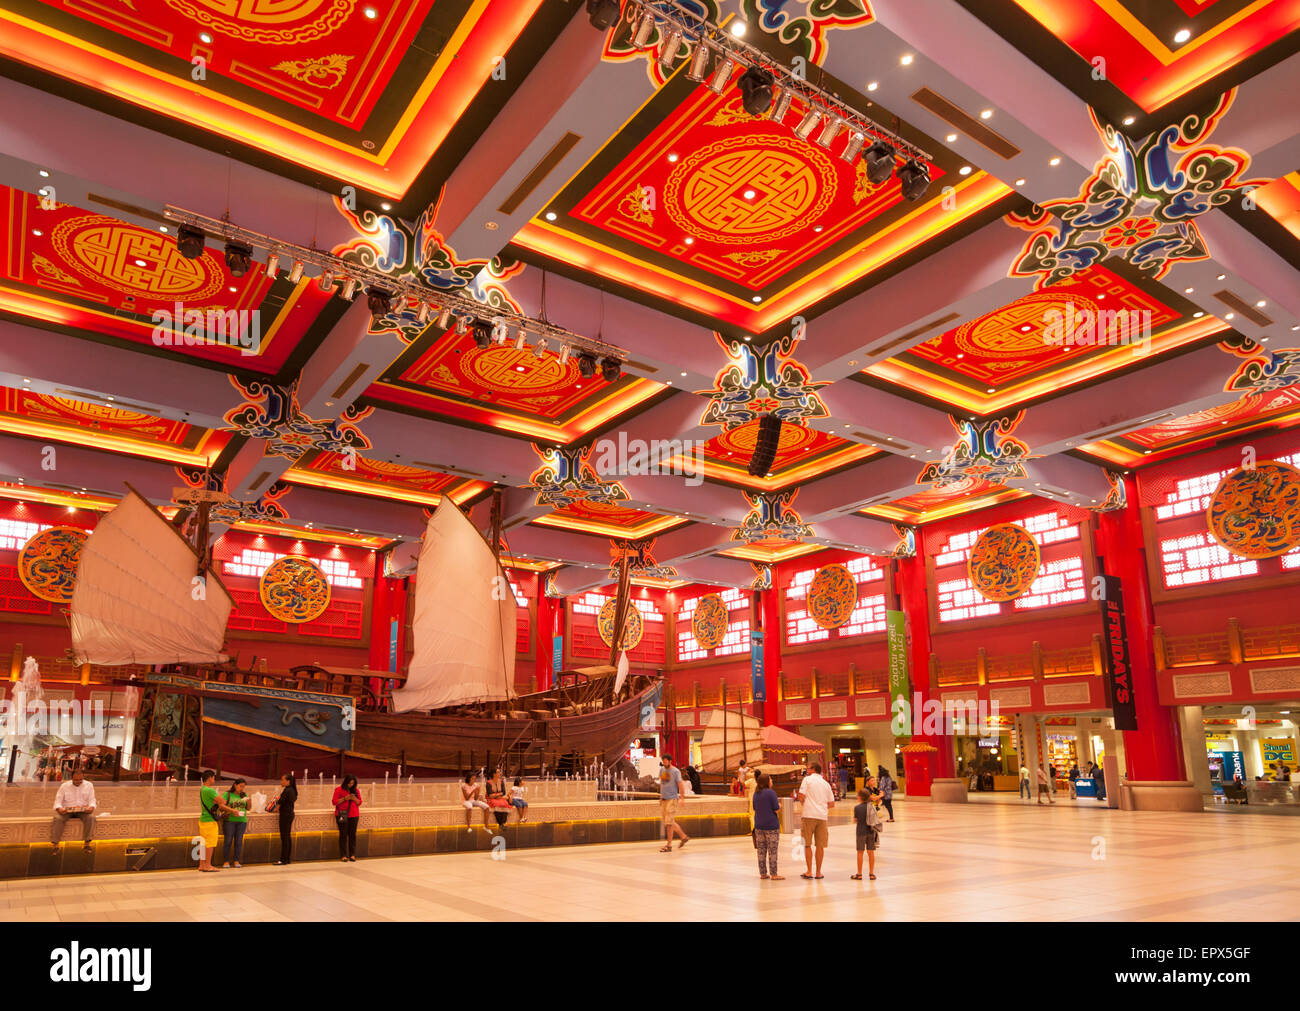 China-Gericht in der Ibn Battuta Mall, Dubai City, Vereinigte Arabische Emirate, Vereinigte Arabische Emirate, Naher Osten Stockfoto